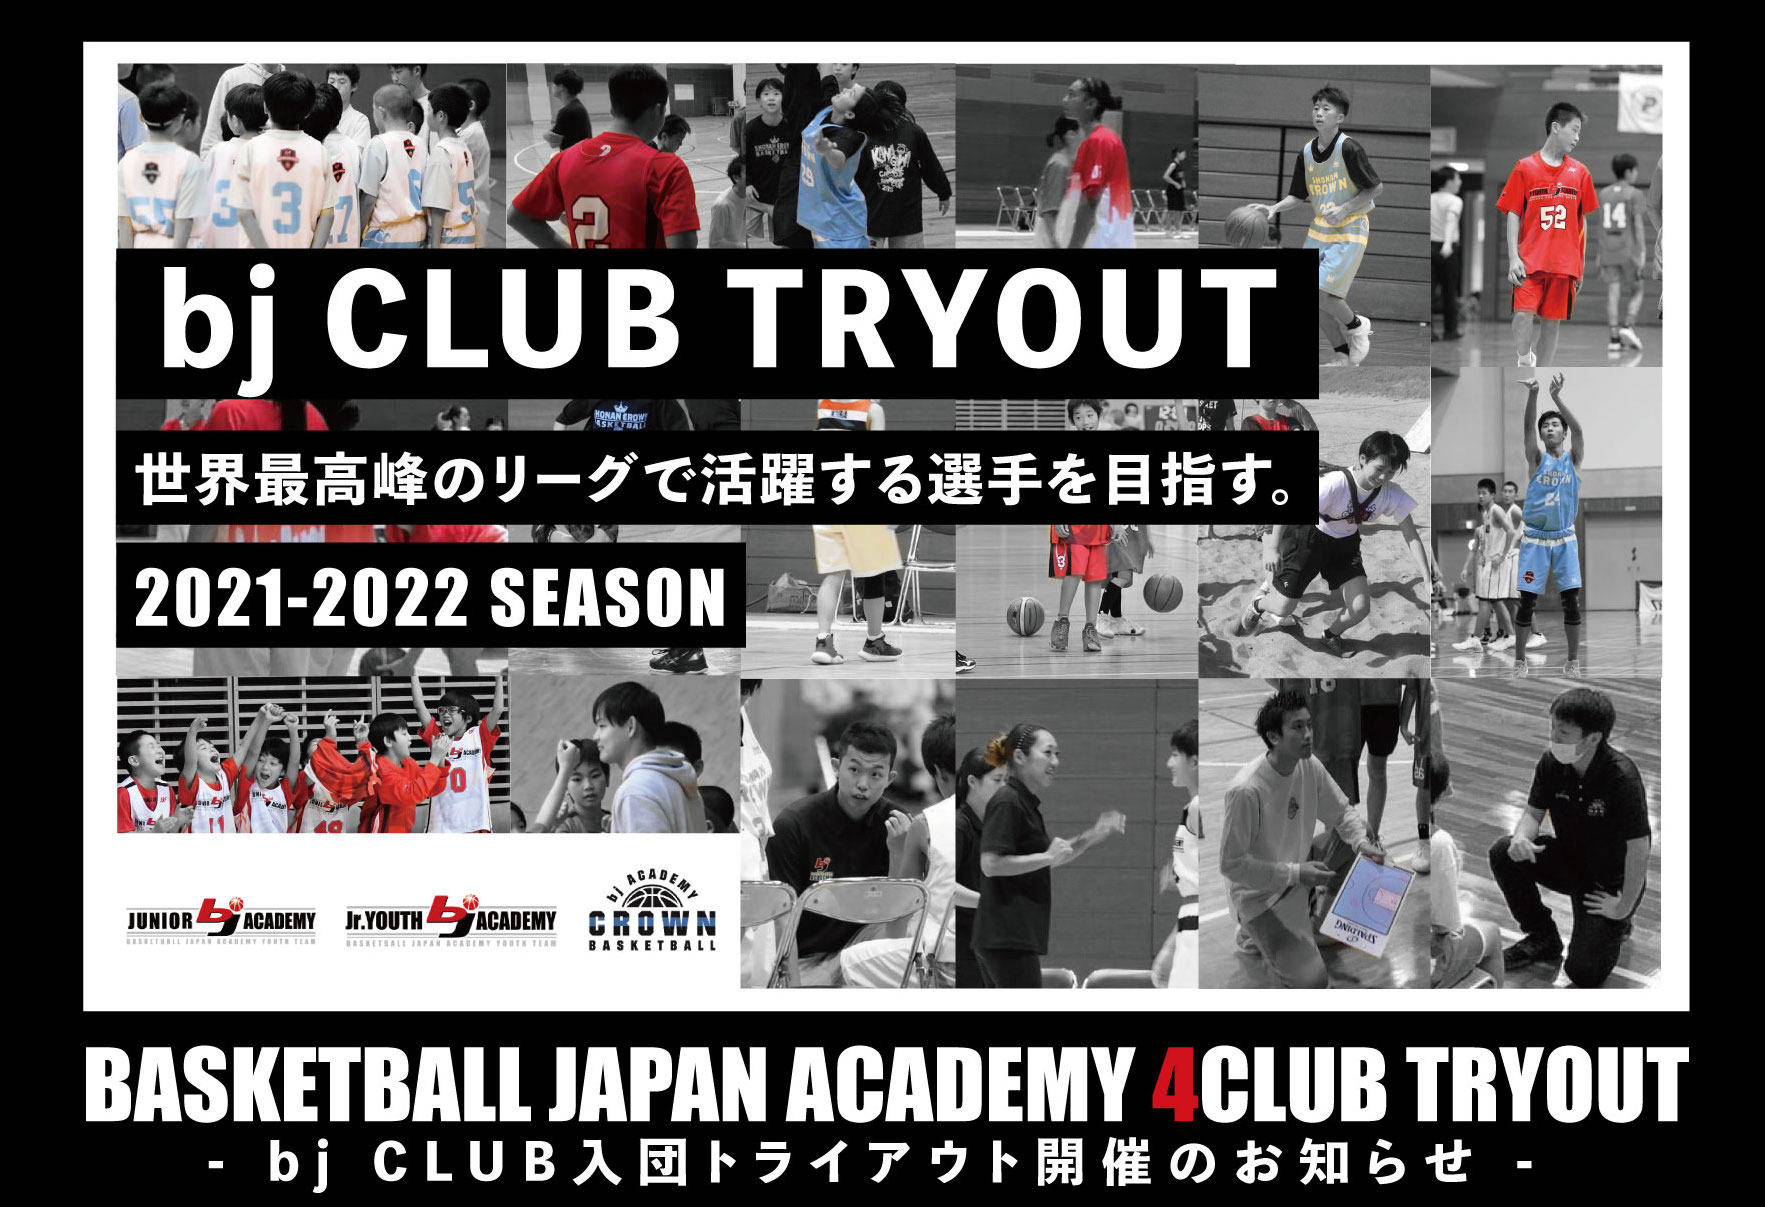 Bj Academy バスケットボールジャパンアカデミー クラブトライアウト情報 21年度の新規クラブ生を募集いたします 各クラブのトライアウトについては下記よりご確認ください 皆様のご応募お待ちしております T Co 3zmvyivhrt T Co